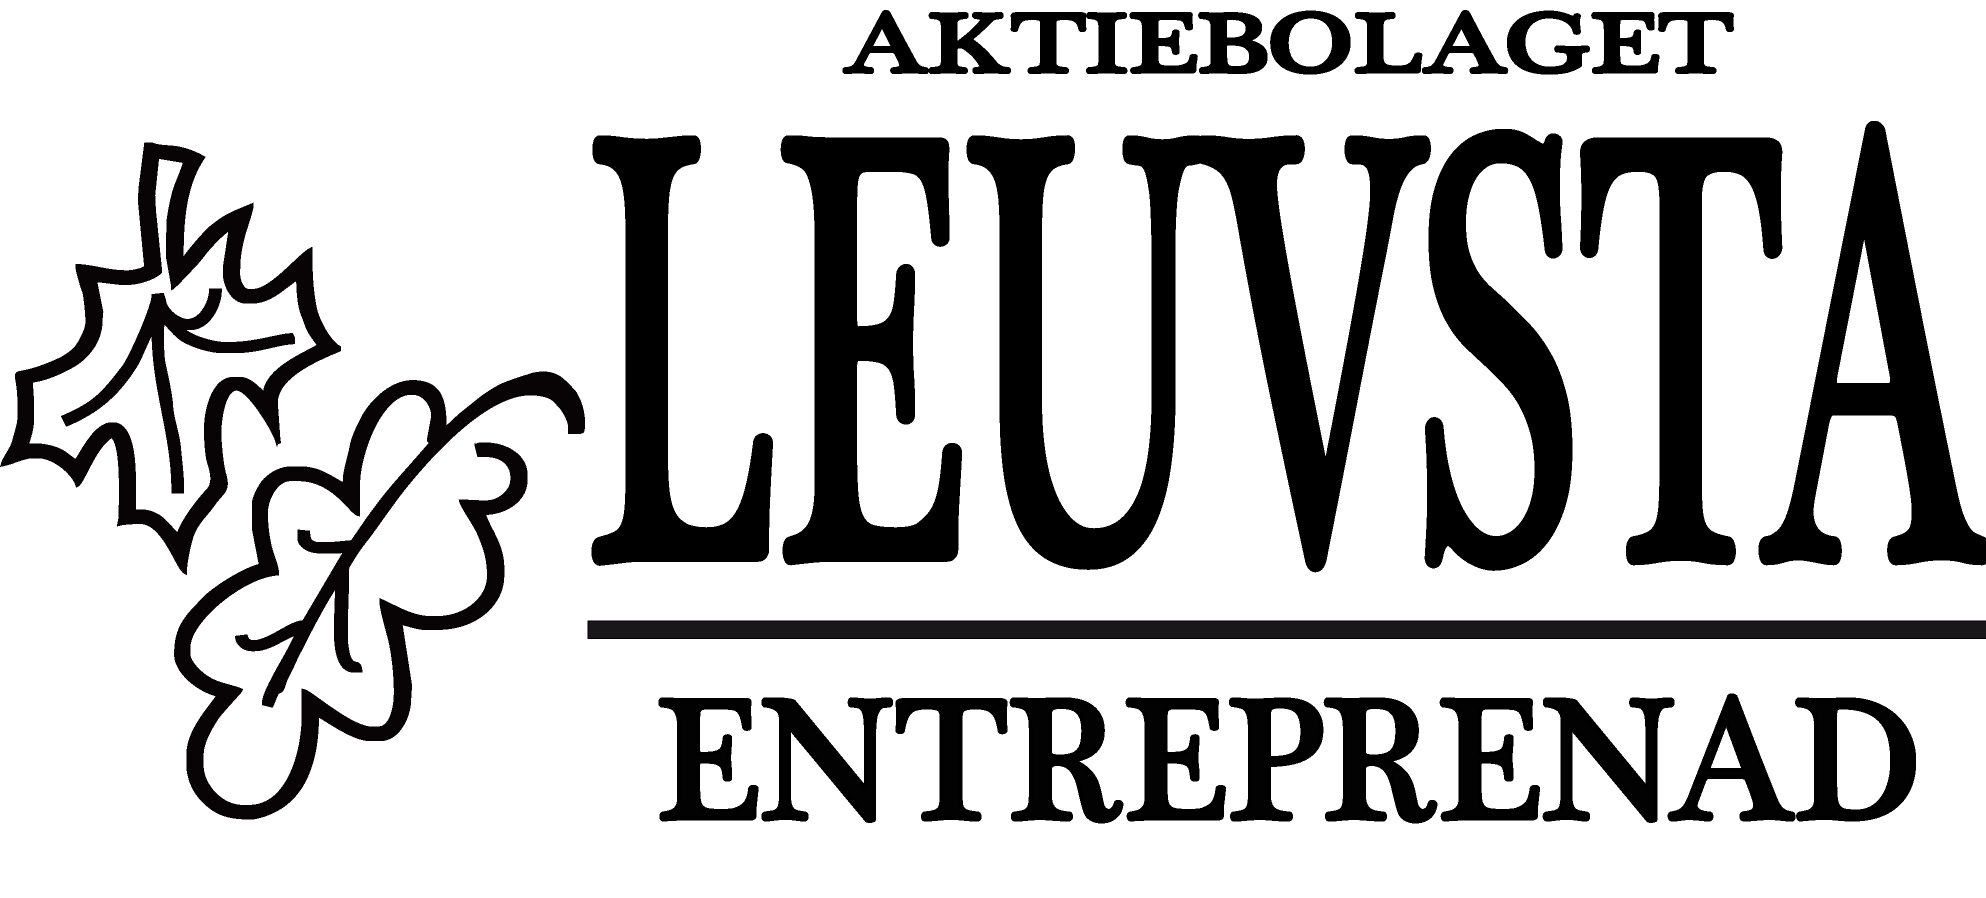 AB Leuvsta Entreprenad